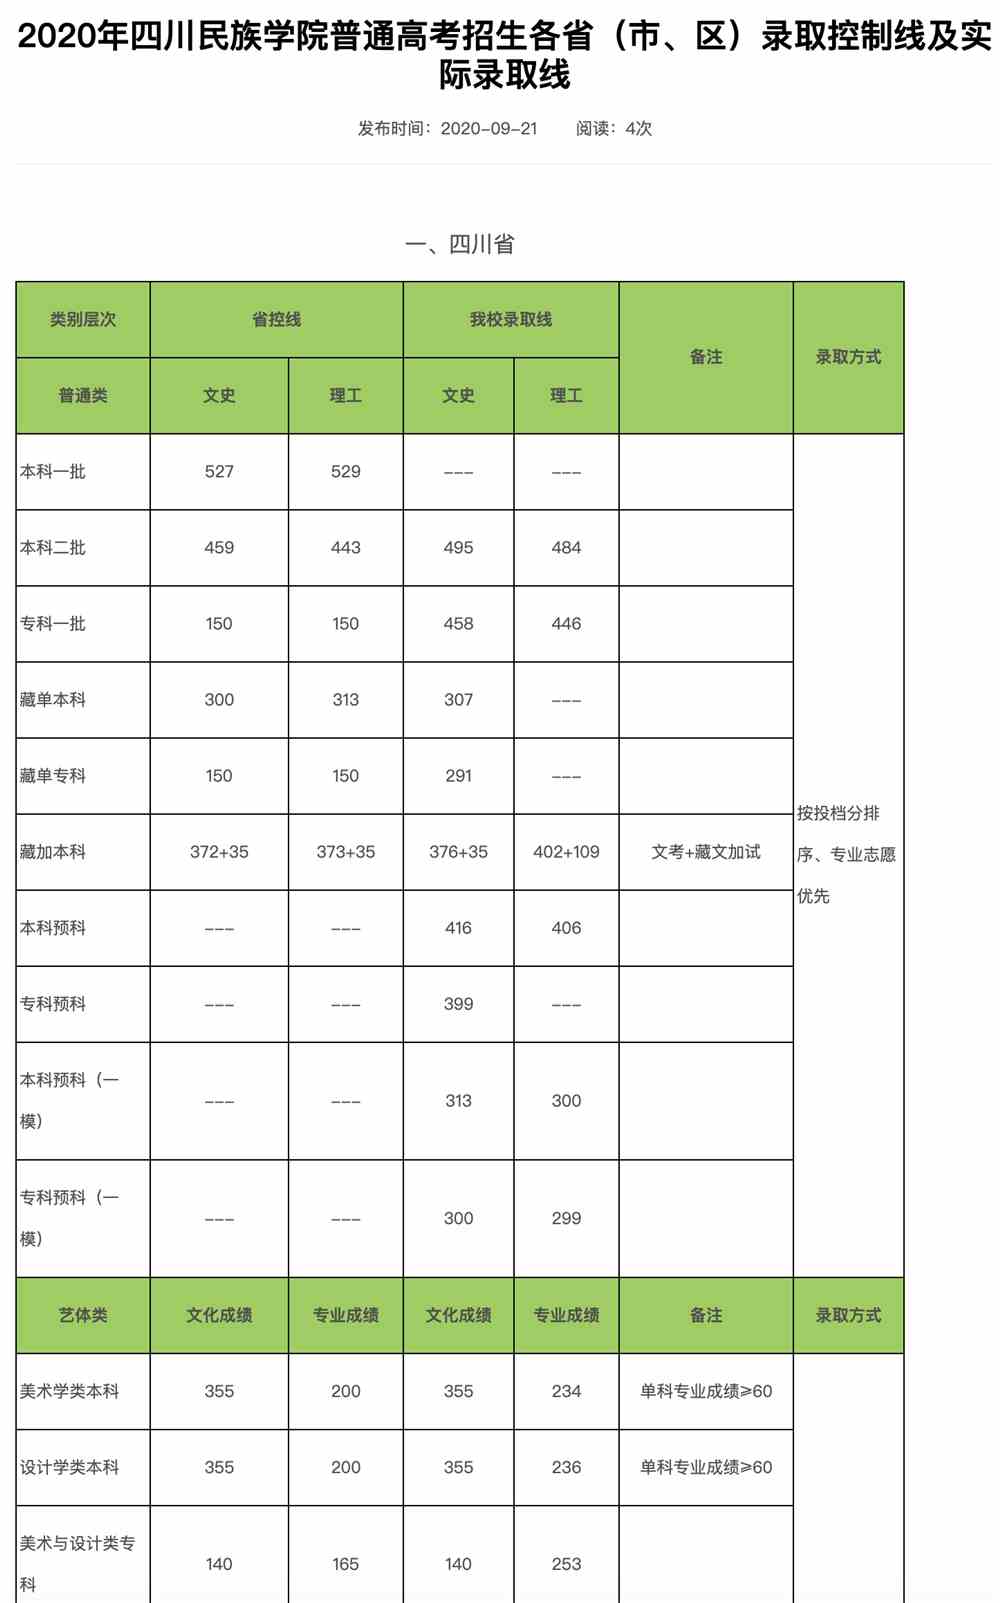 2020年四川民族学院普通高考招生各省（市、区）录取控制线及实际录取线